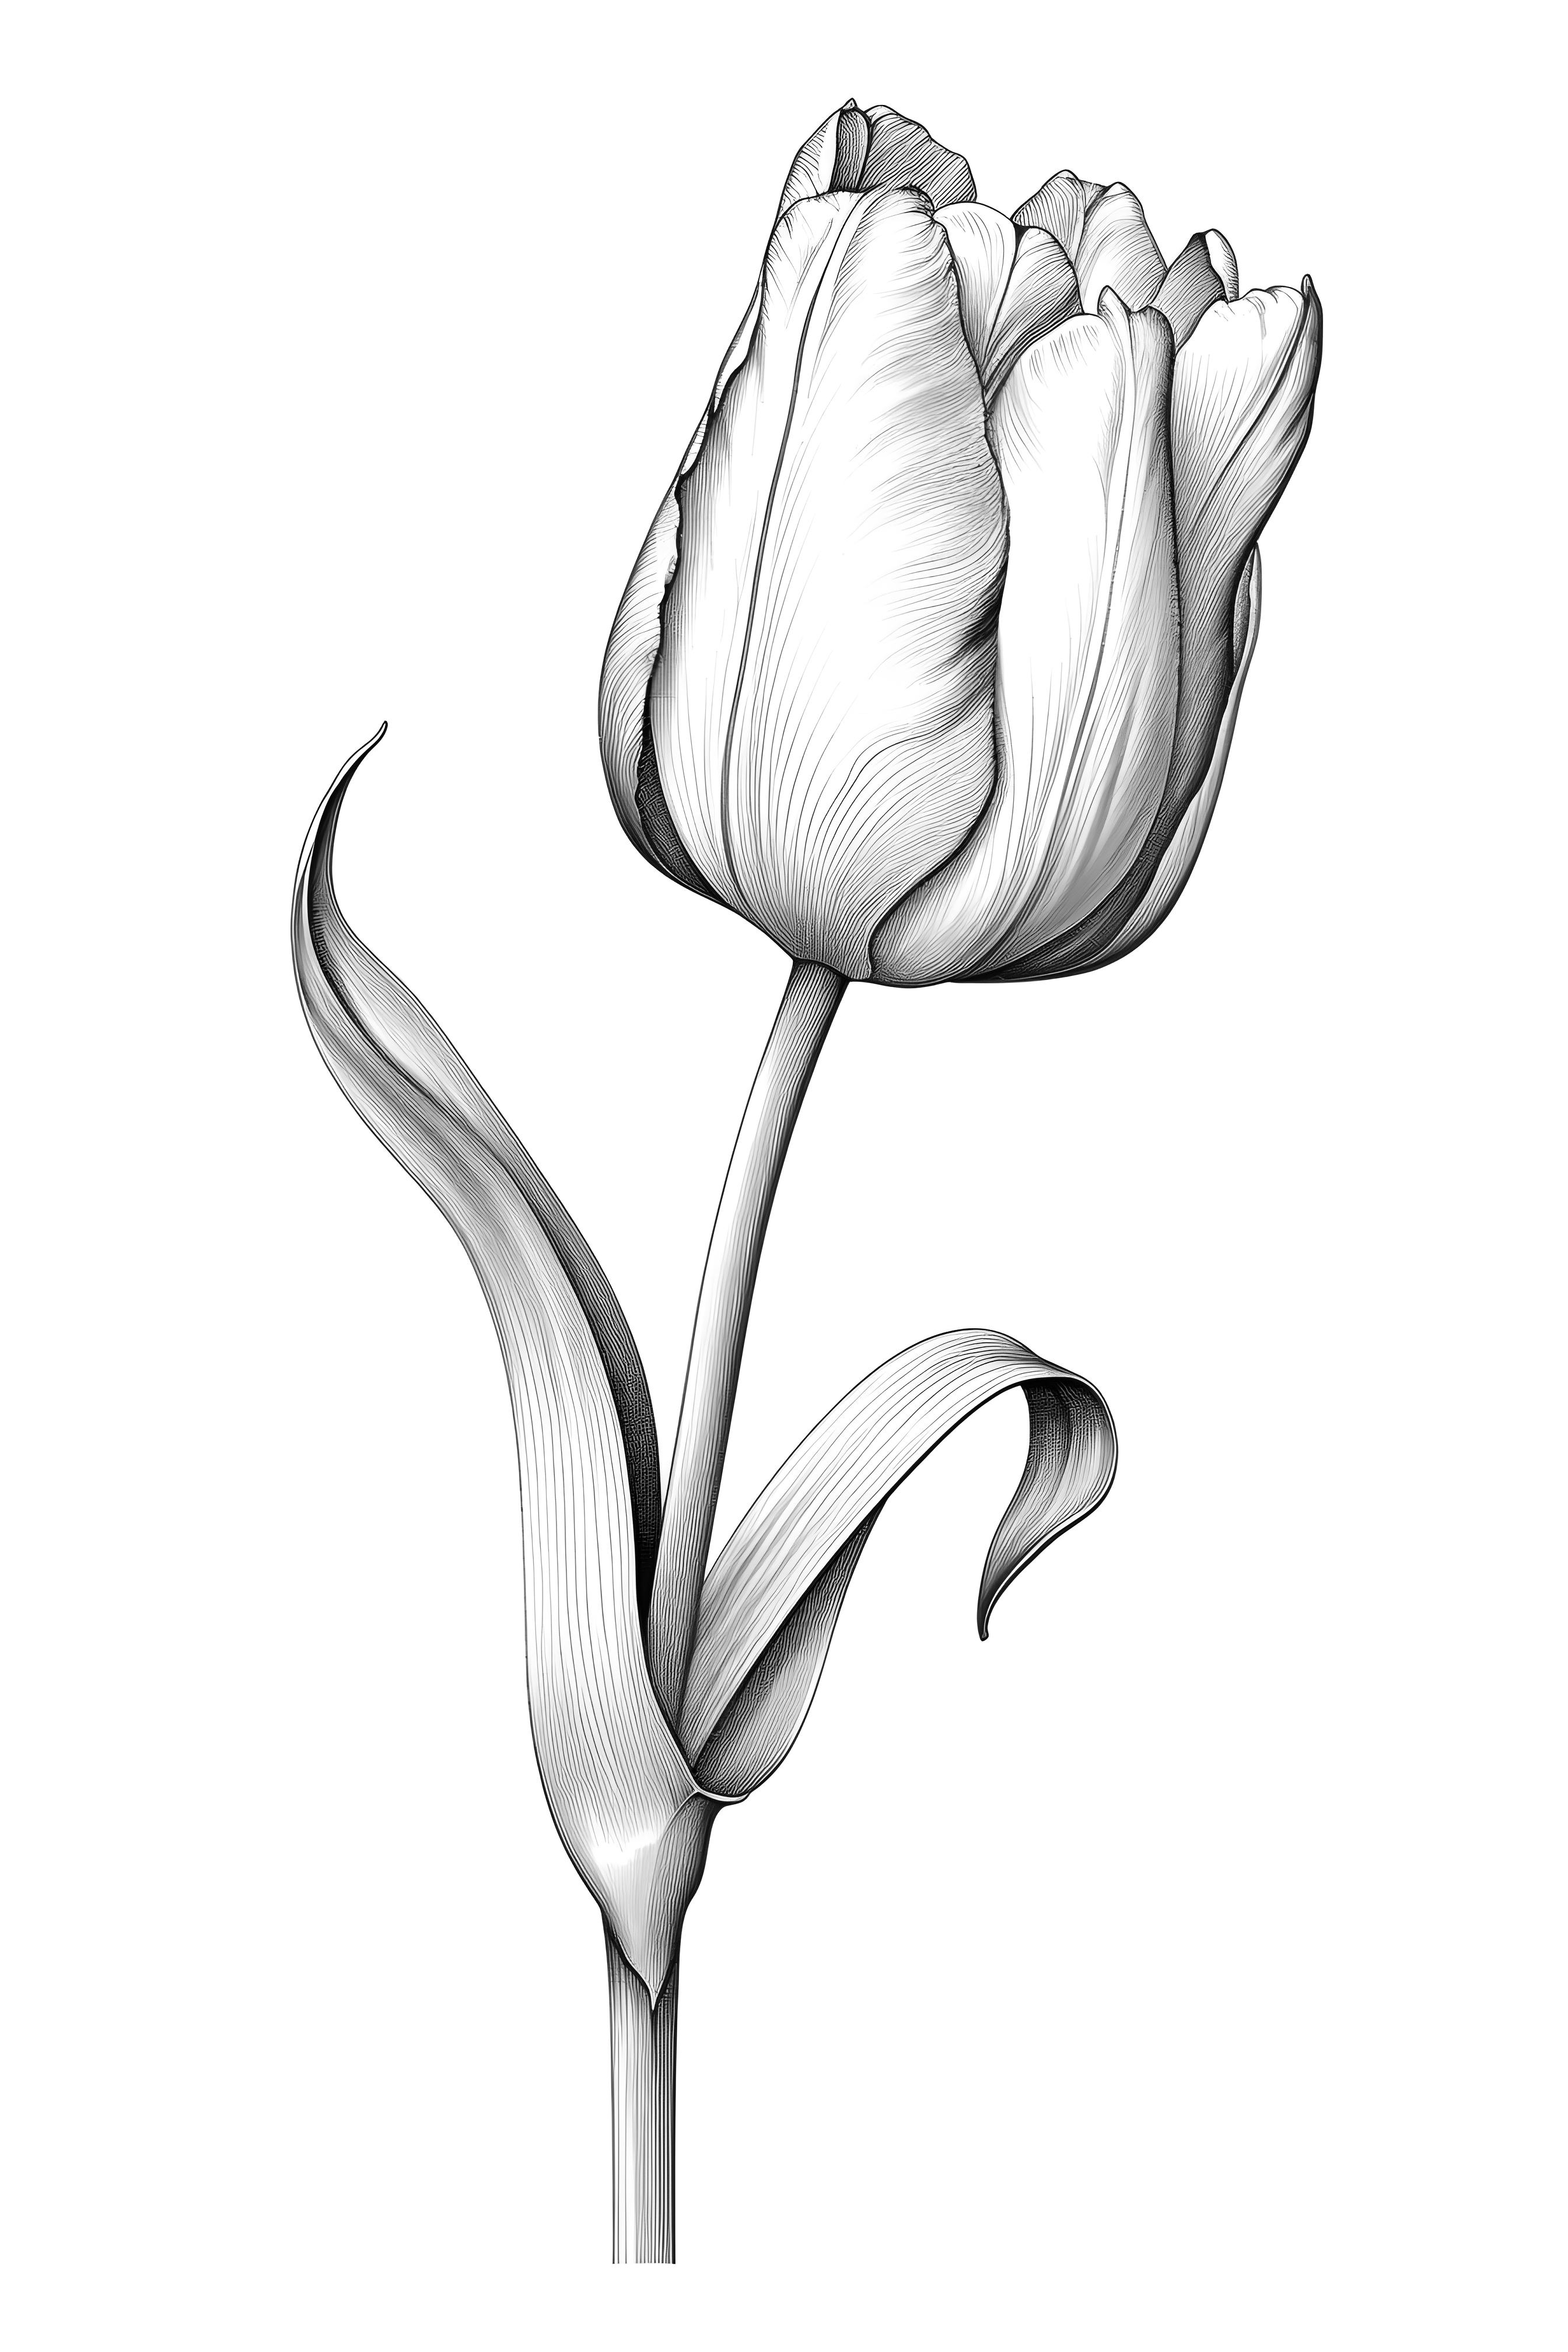 A tulip flower coloring pages for adults ðñðððððº